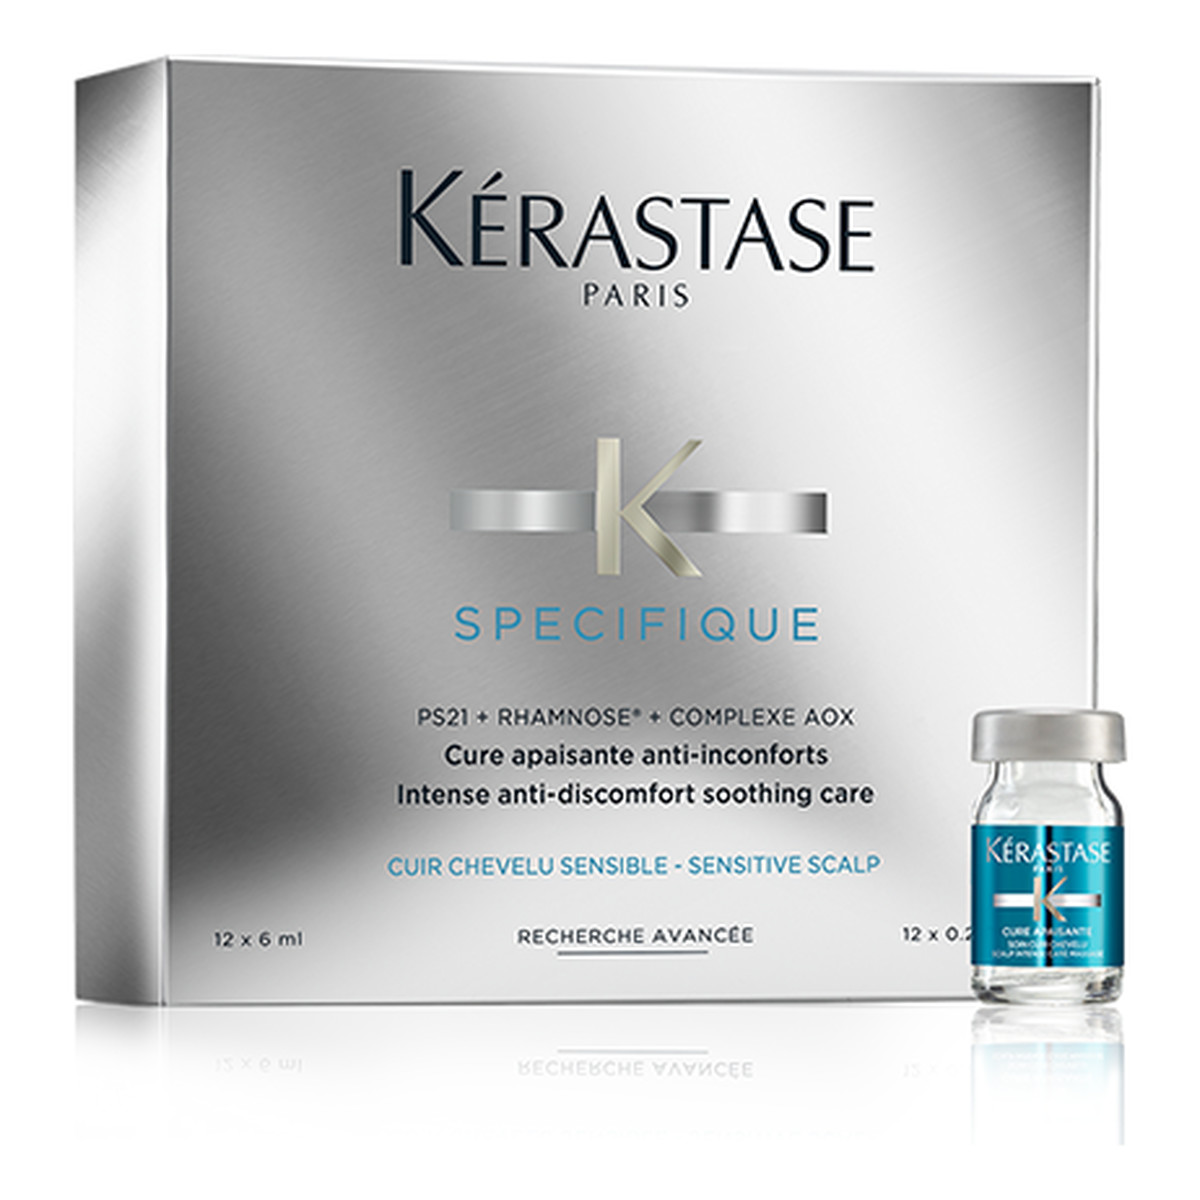 Kerastase Specifique ampułki kojące dla wrażliwej skóry głowy 12x6ml 72ml